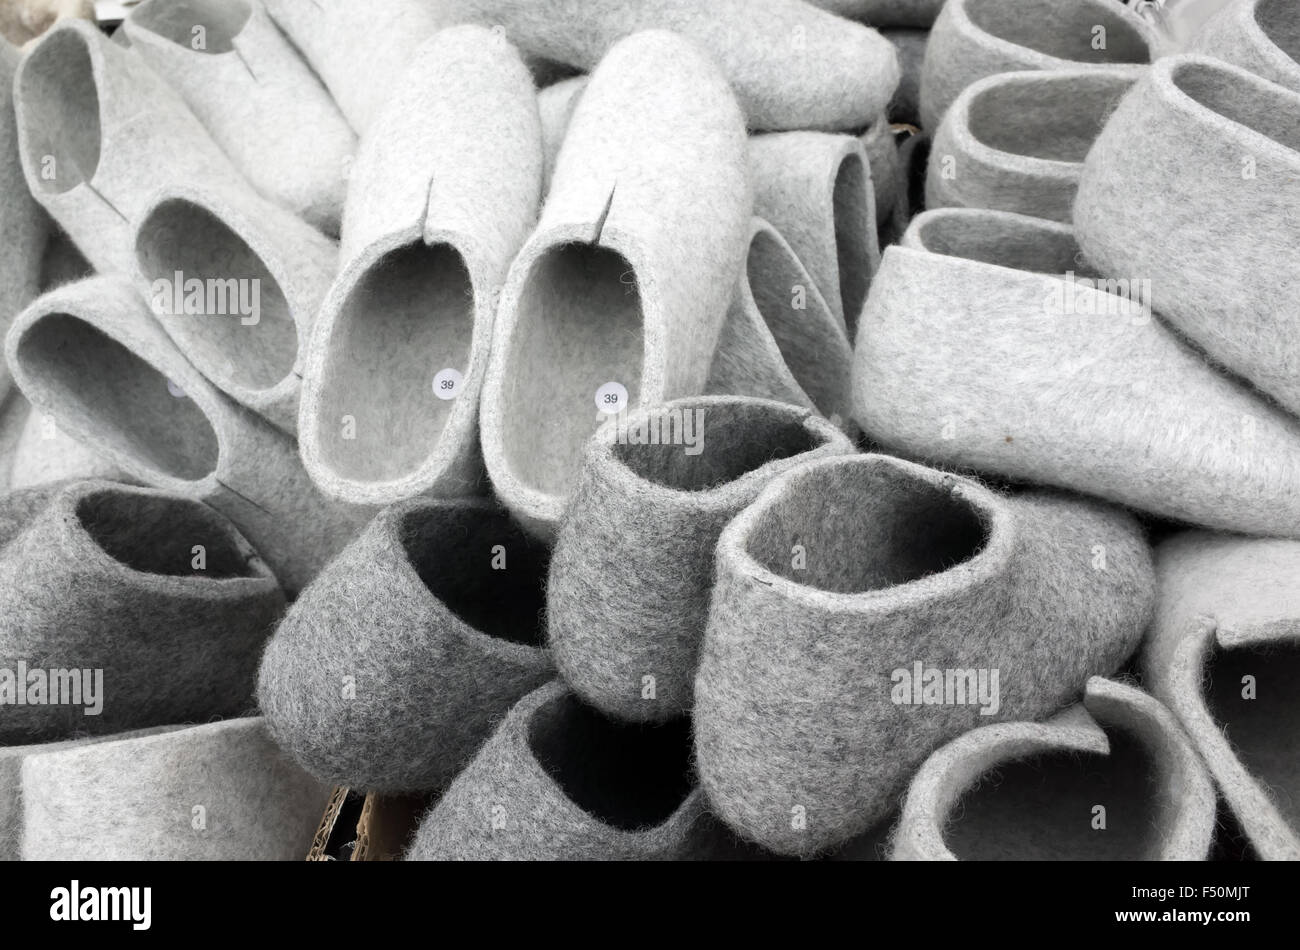 Pile de feutre traditionnel gris chaussons sur le salon finlandais Banque D'Images